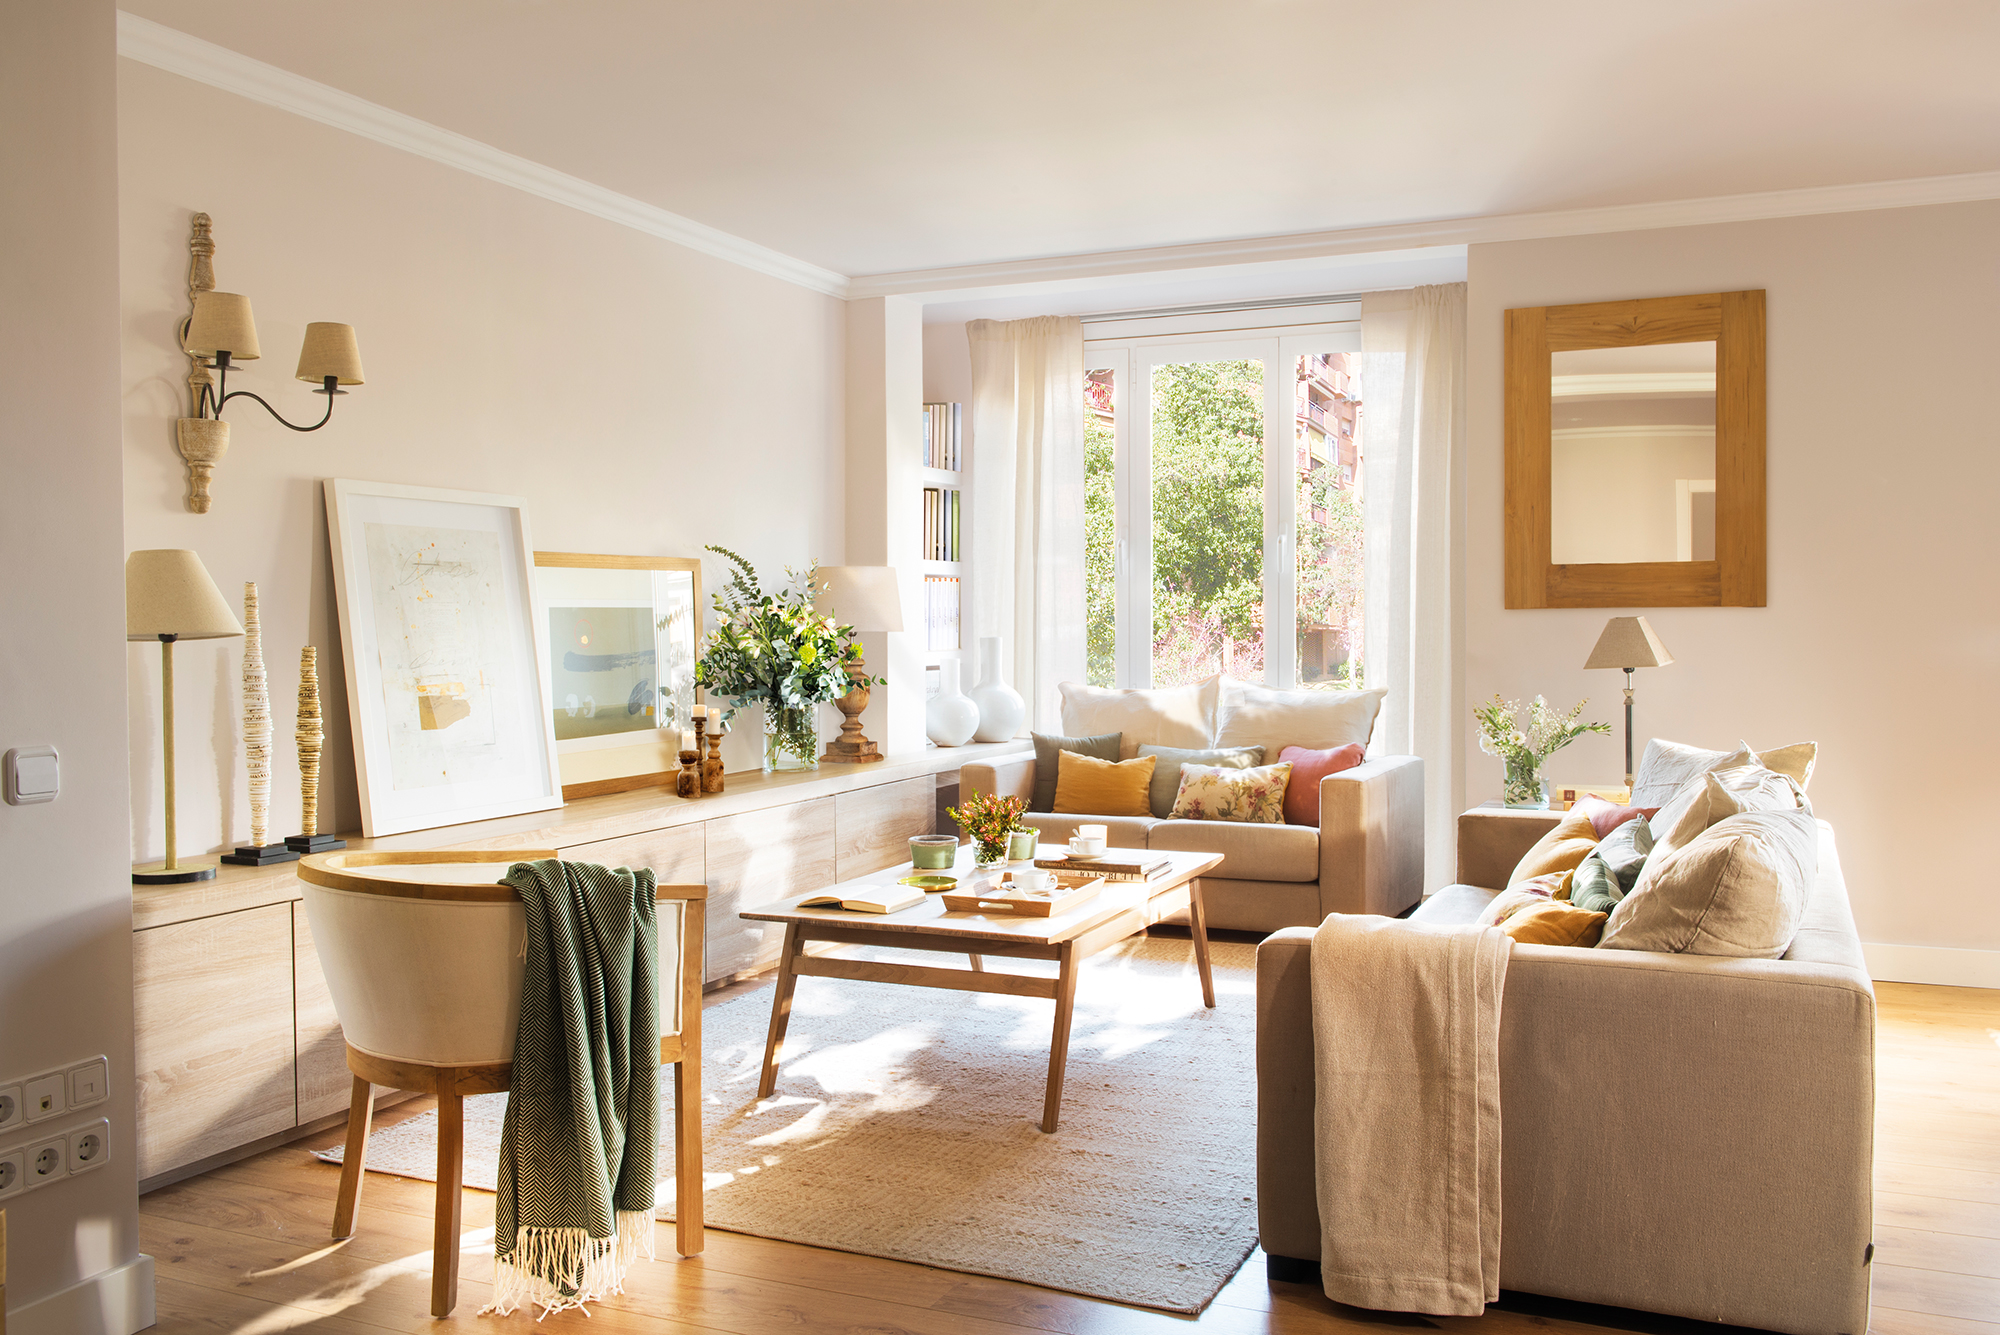 Salón moderno en tonos claros con mueble de madera, cuadros decorativos, alfombra y sofás grises.